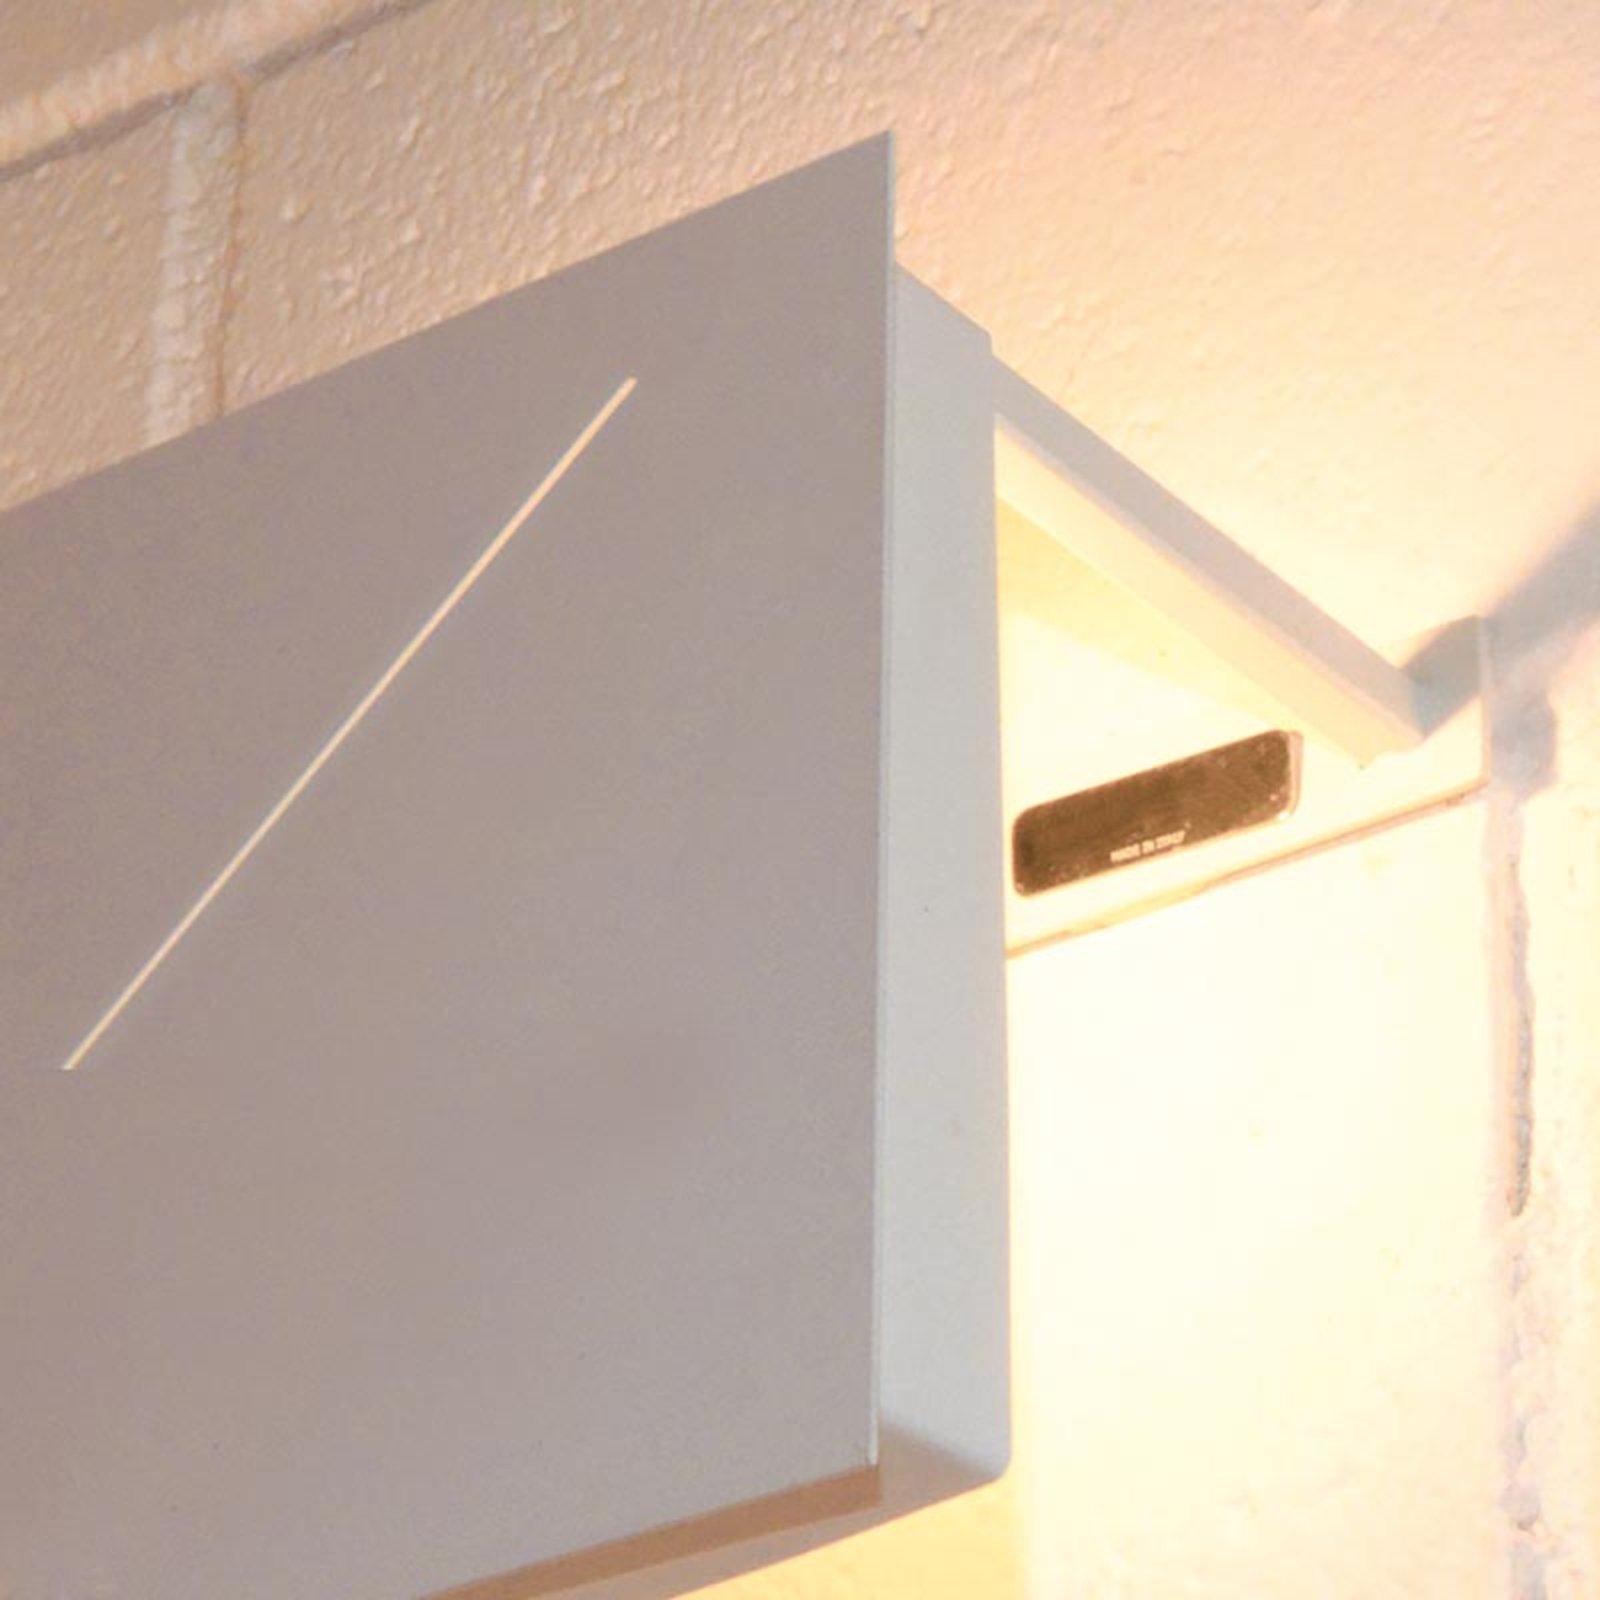 Knikerboker Des.agn - LED wall light, white